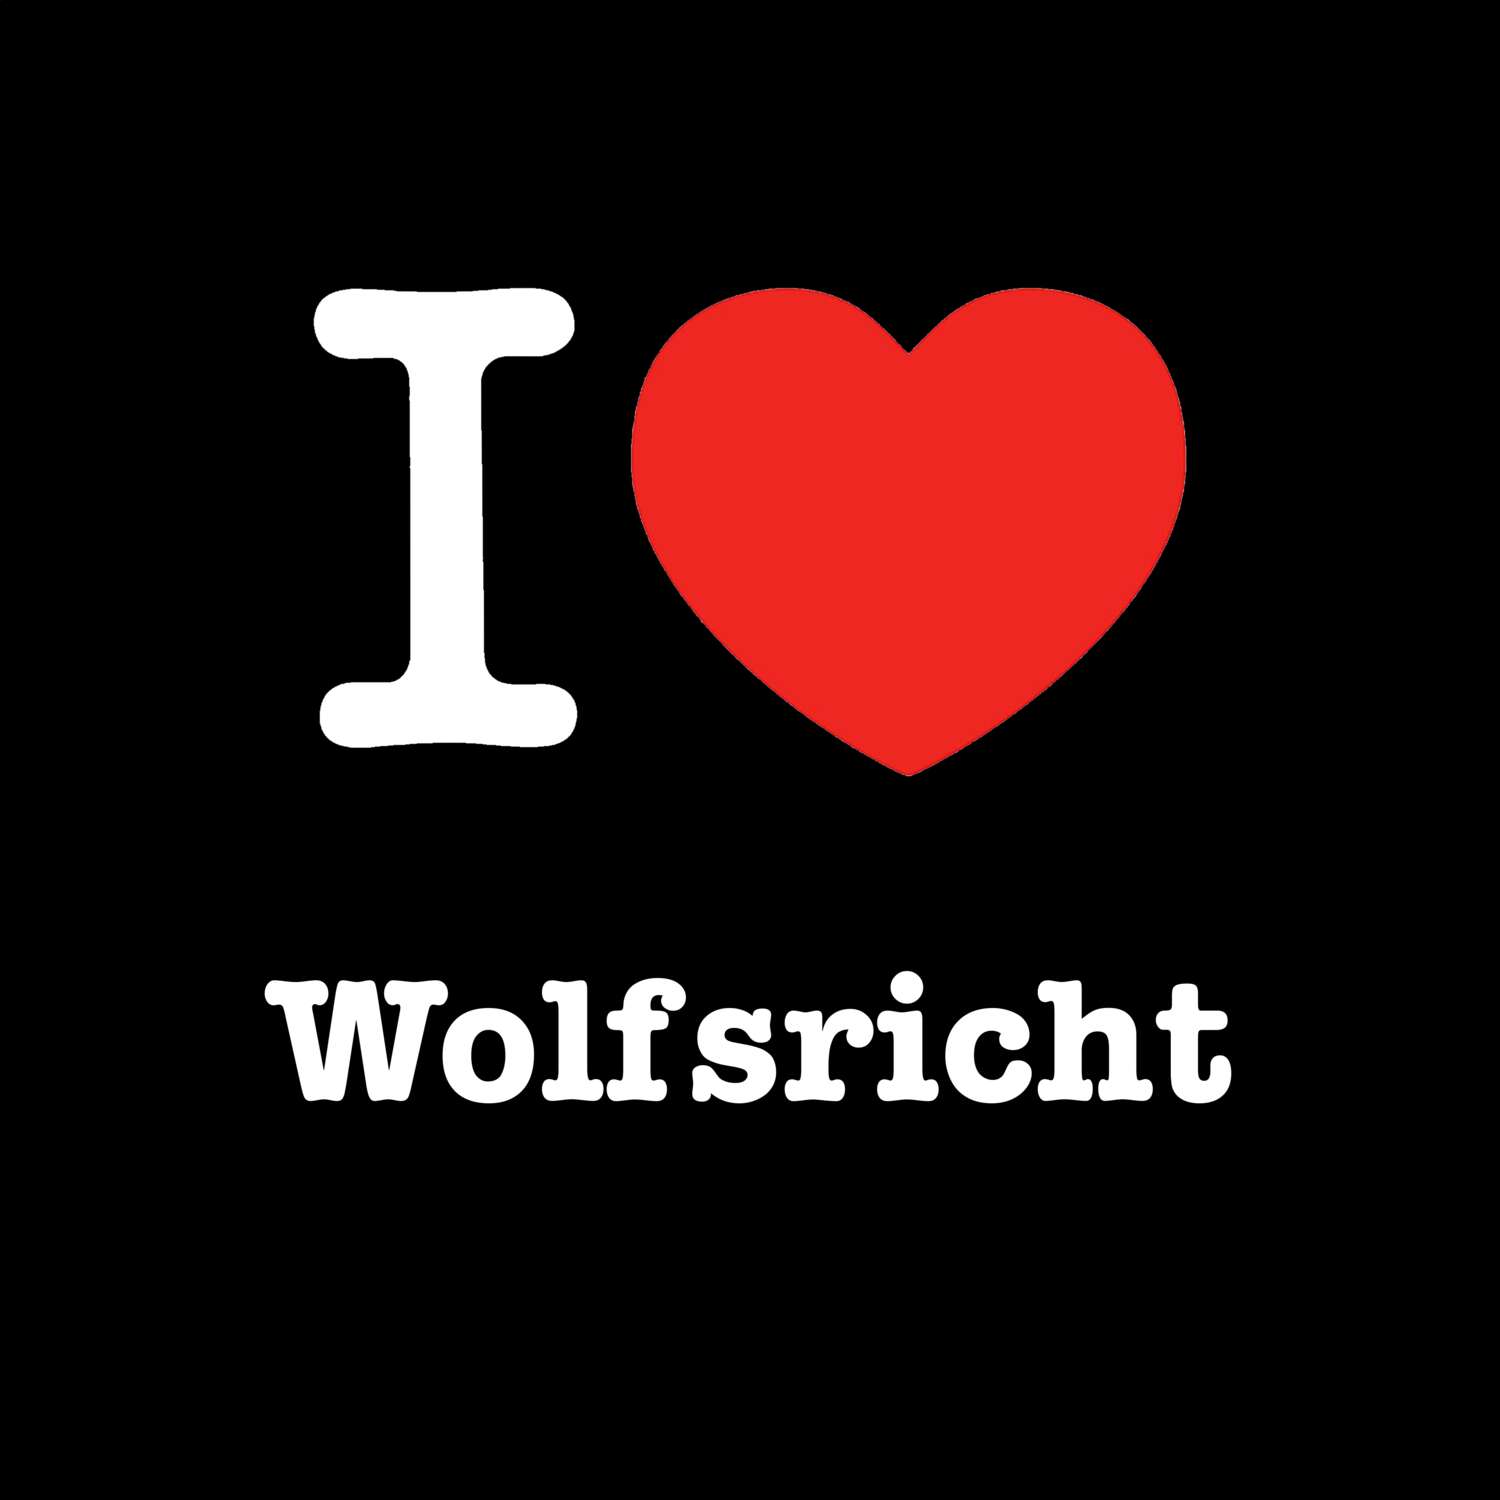 Wolfsricht T-Shirt »I love«